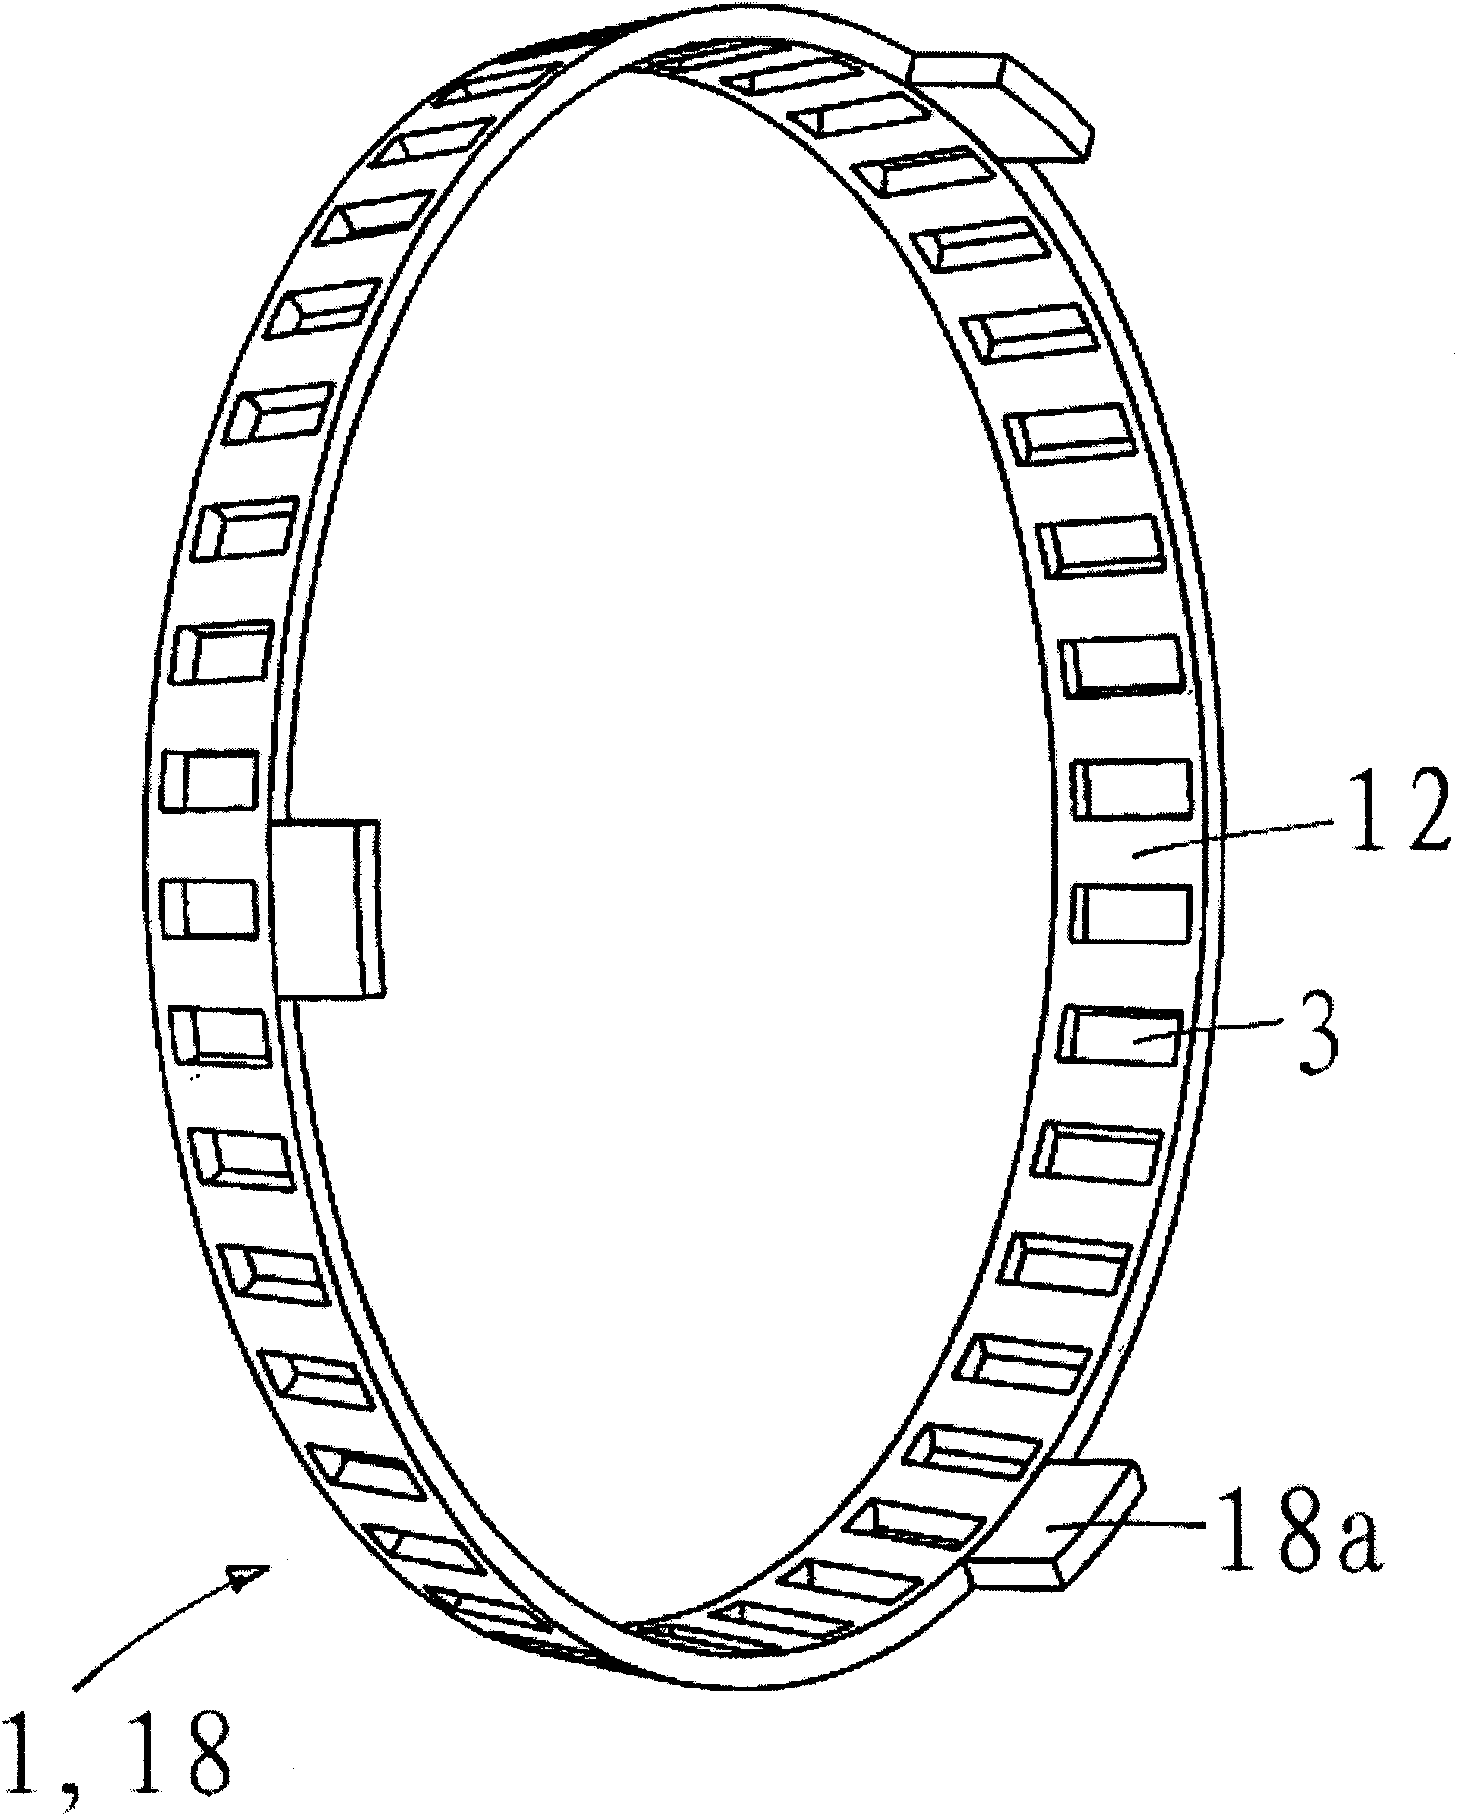 Synchronizing ring of a synchronizing device